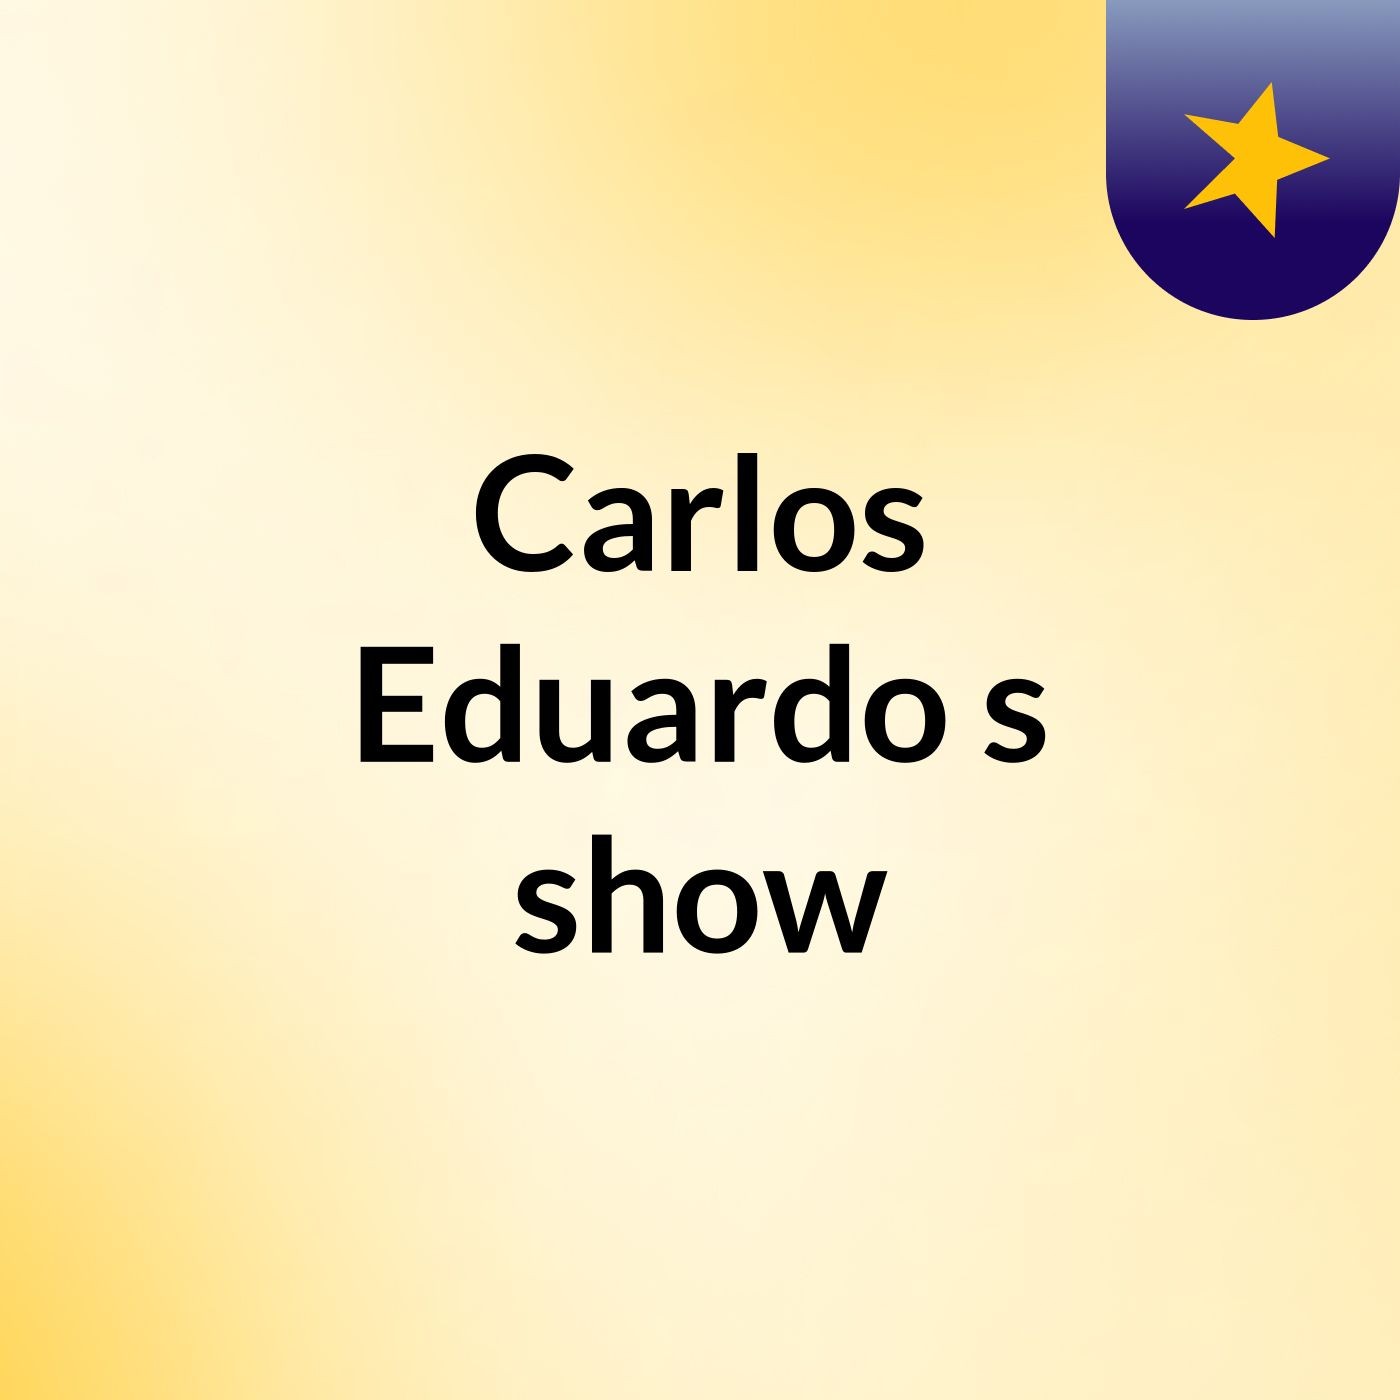 Carlos Eduardo's show